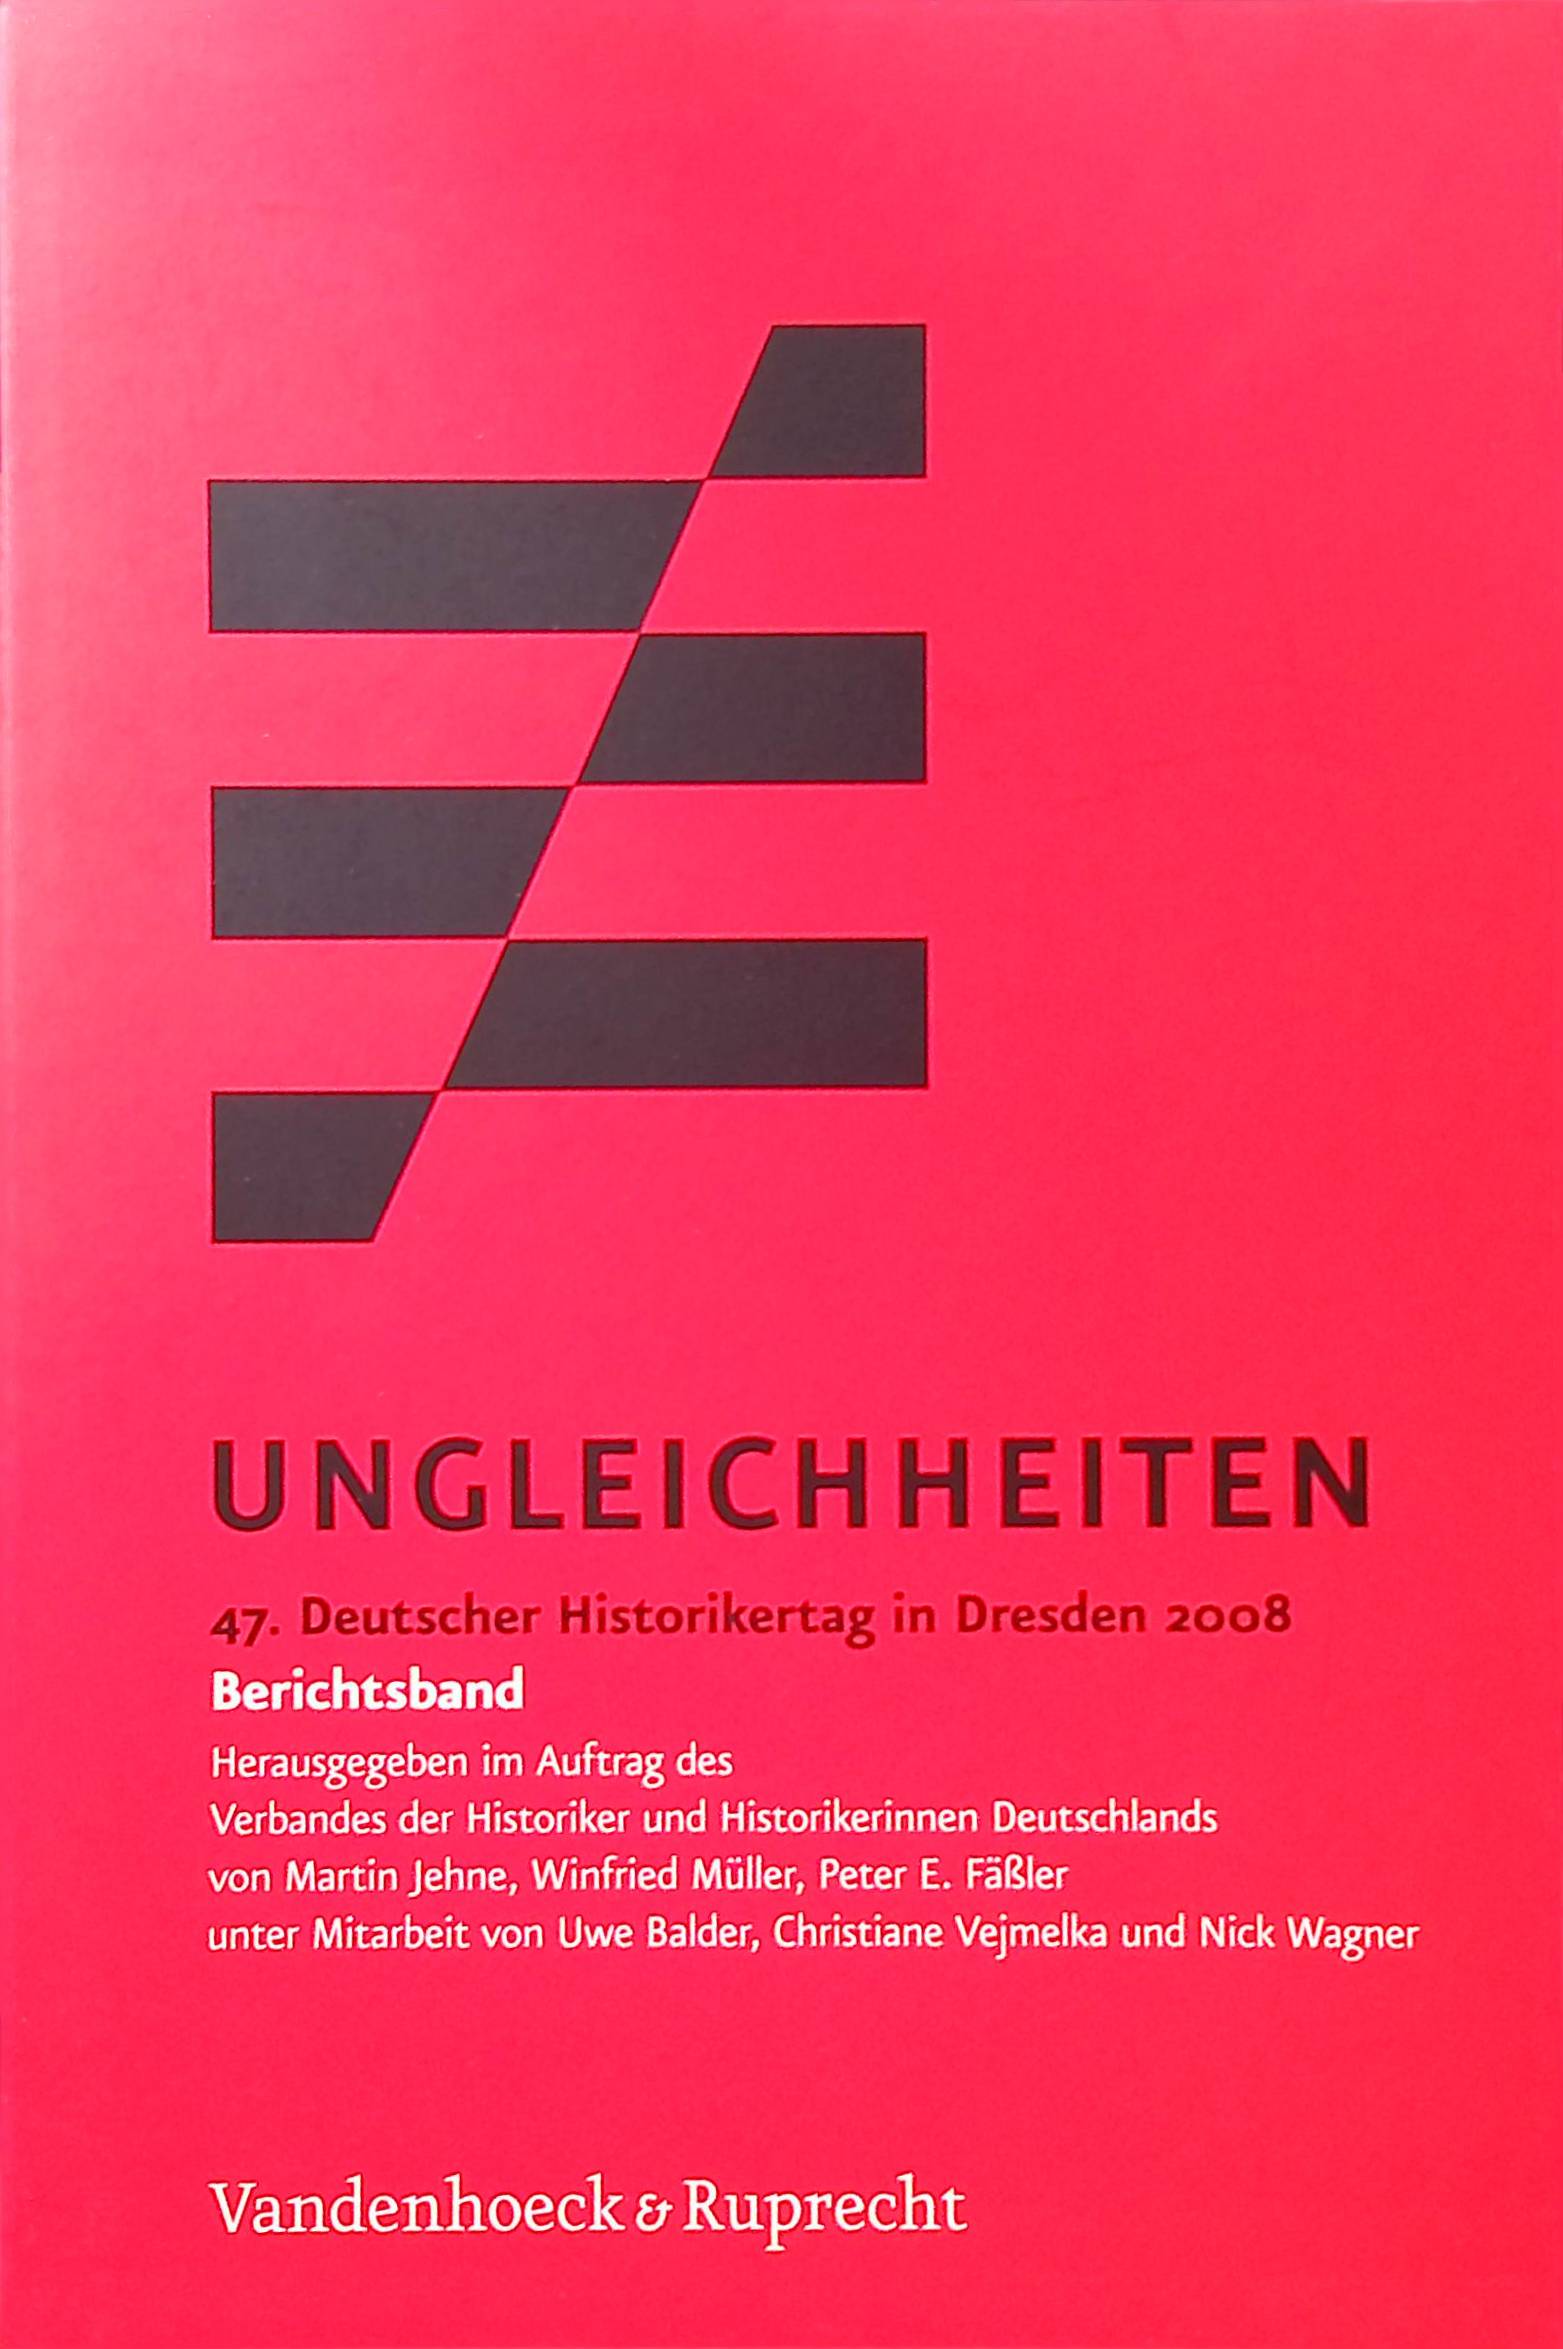 Ungleichheiten :47. Deutscher Historikertag in Dresden 2008 - Jehne, Martin, Winfried Müller Peter E. Fäßler u. a.